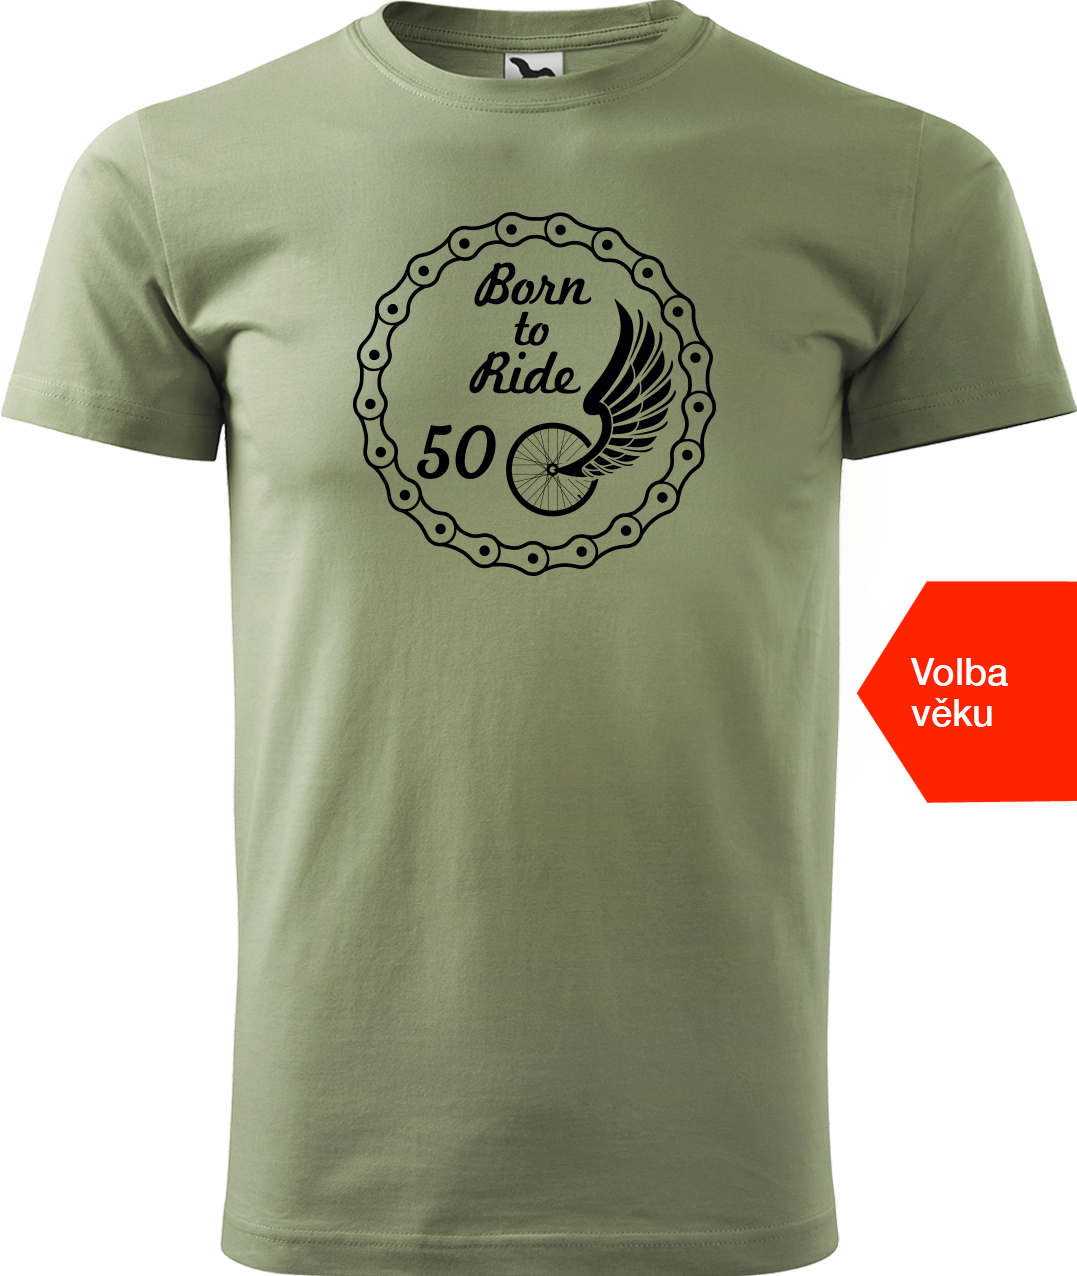 Pánské tričko pro cyklistu s věkem - Born to Ride (wings) Velikost: XL, Barva: Světlá khaki (28)